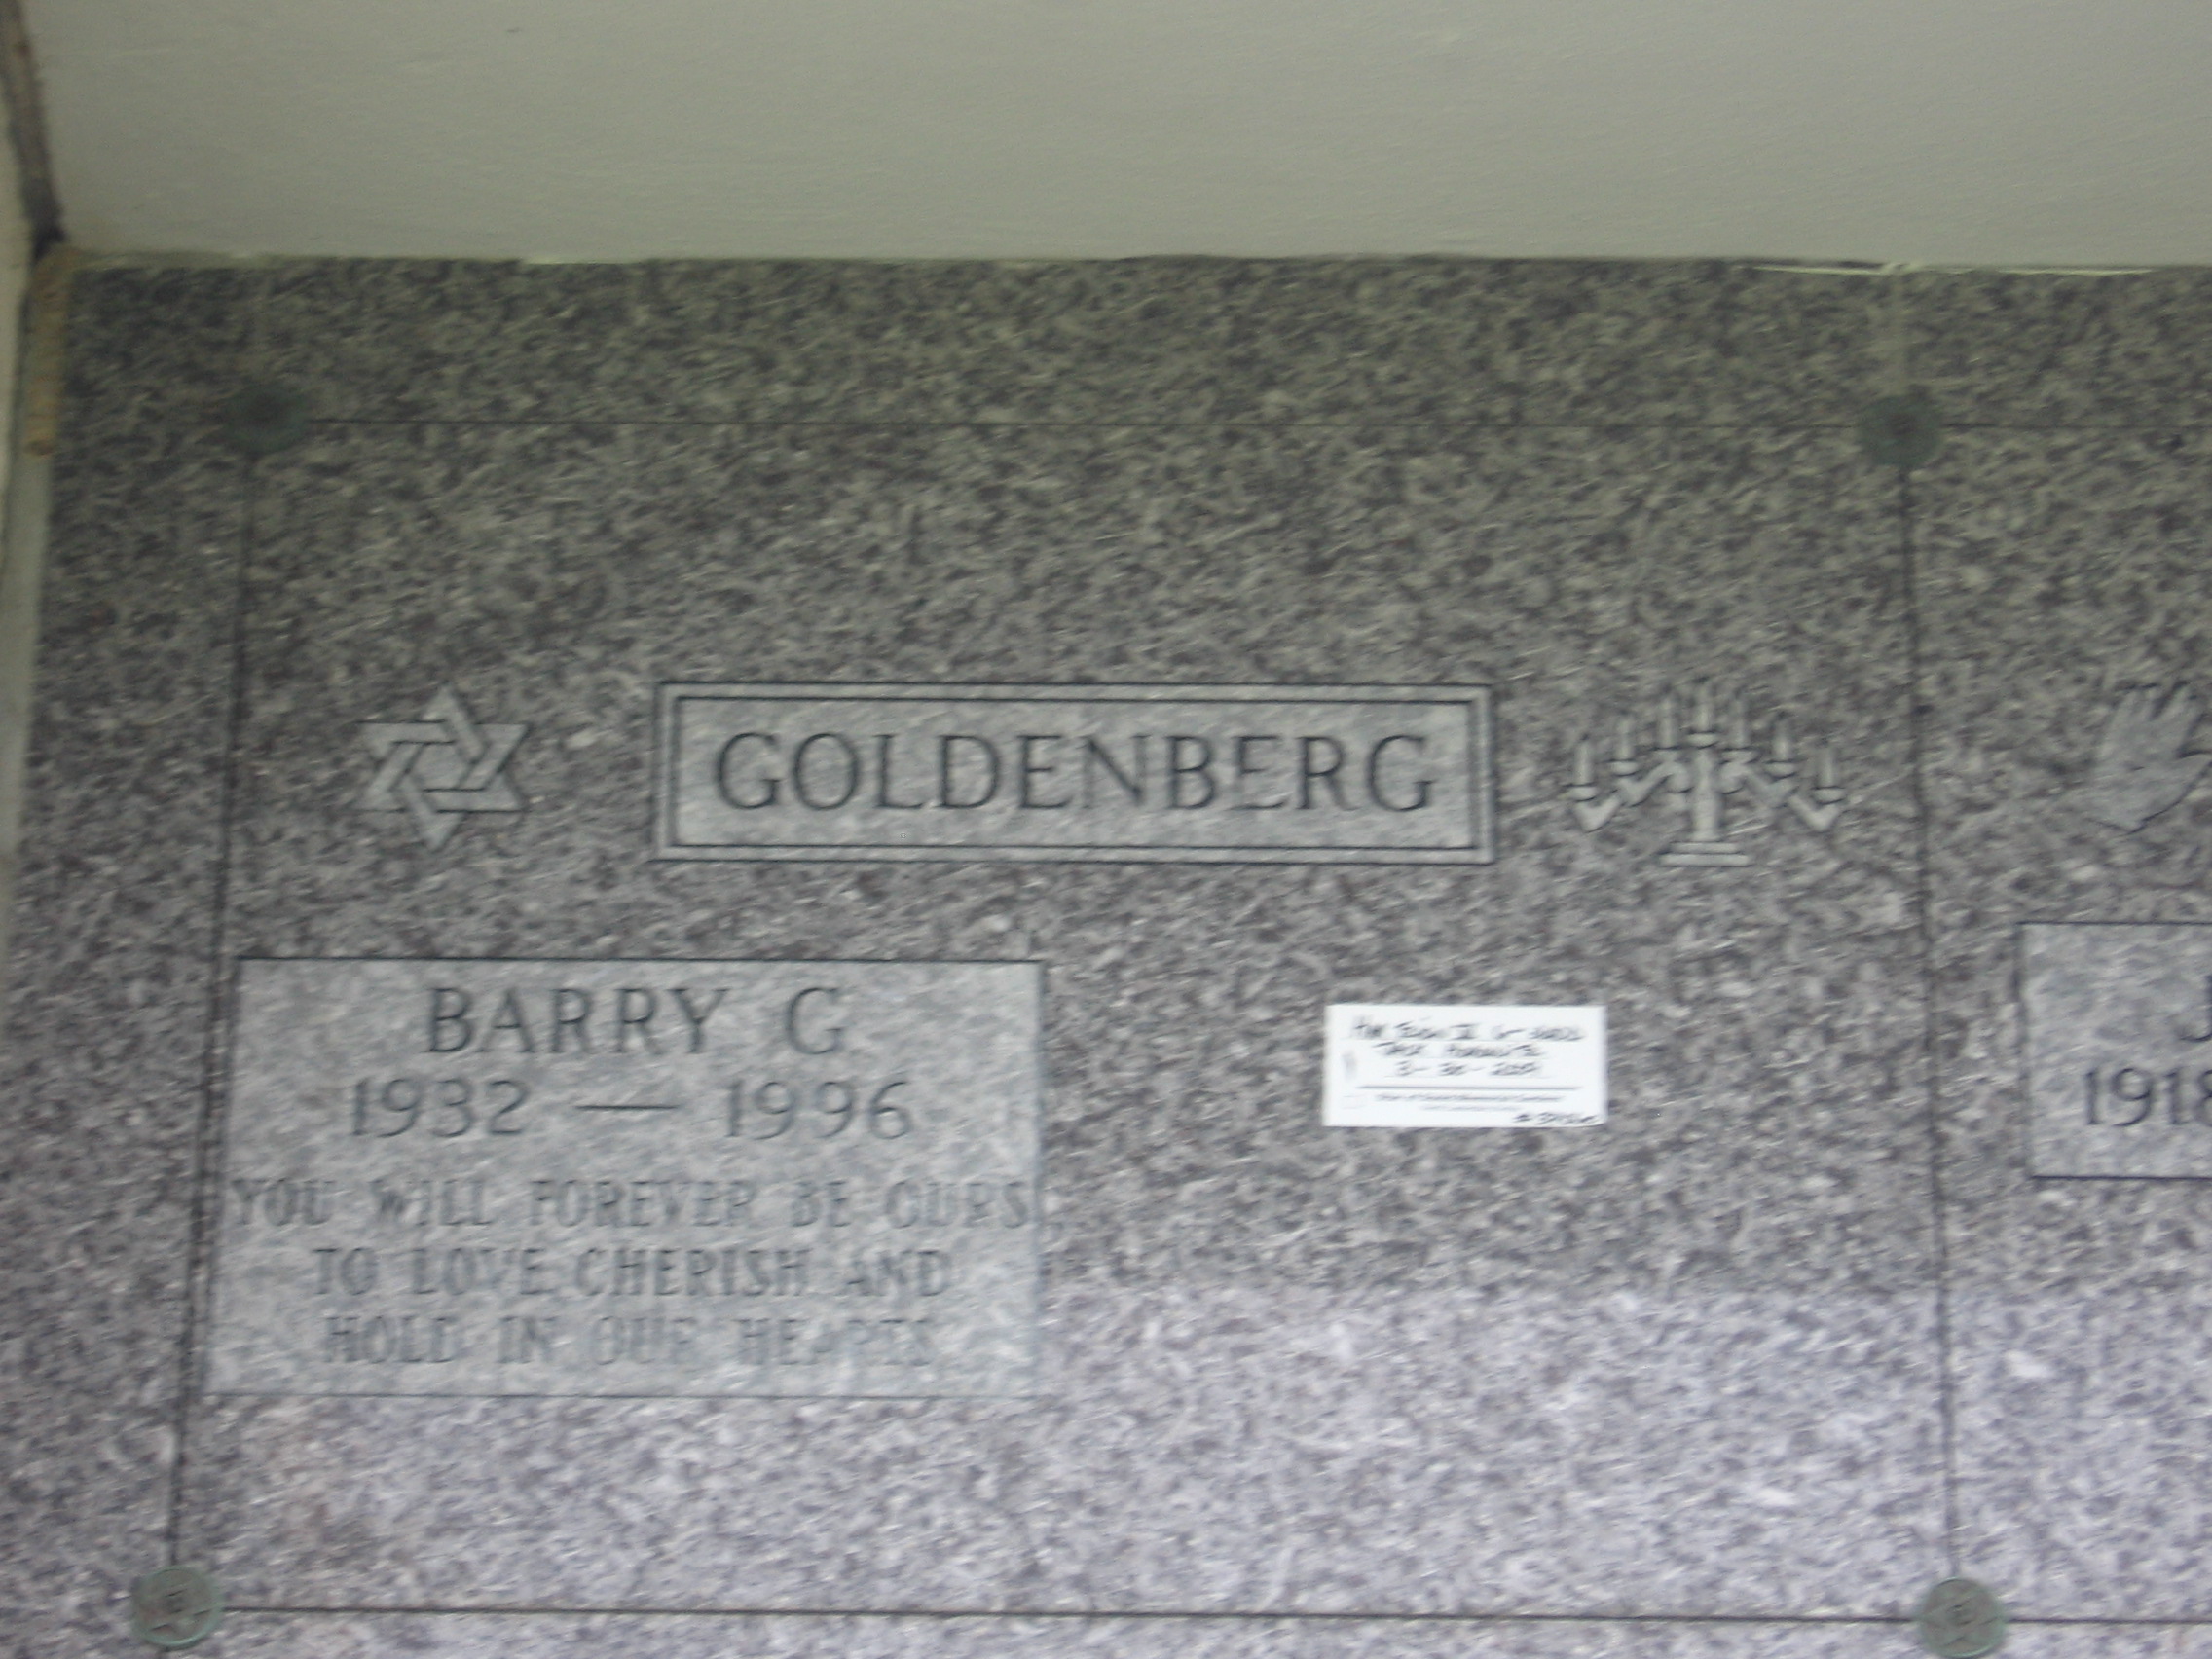 Barry G Goldenberg